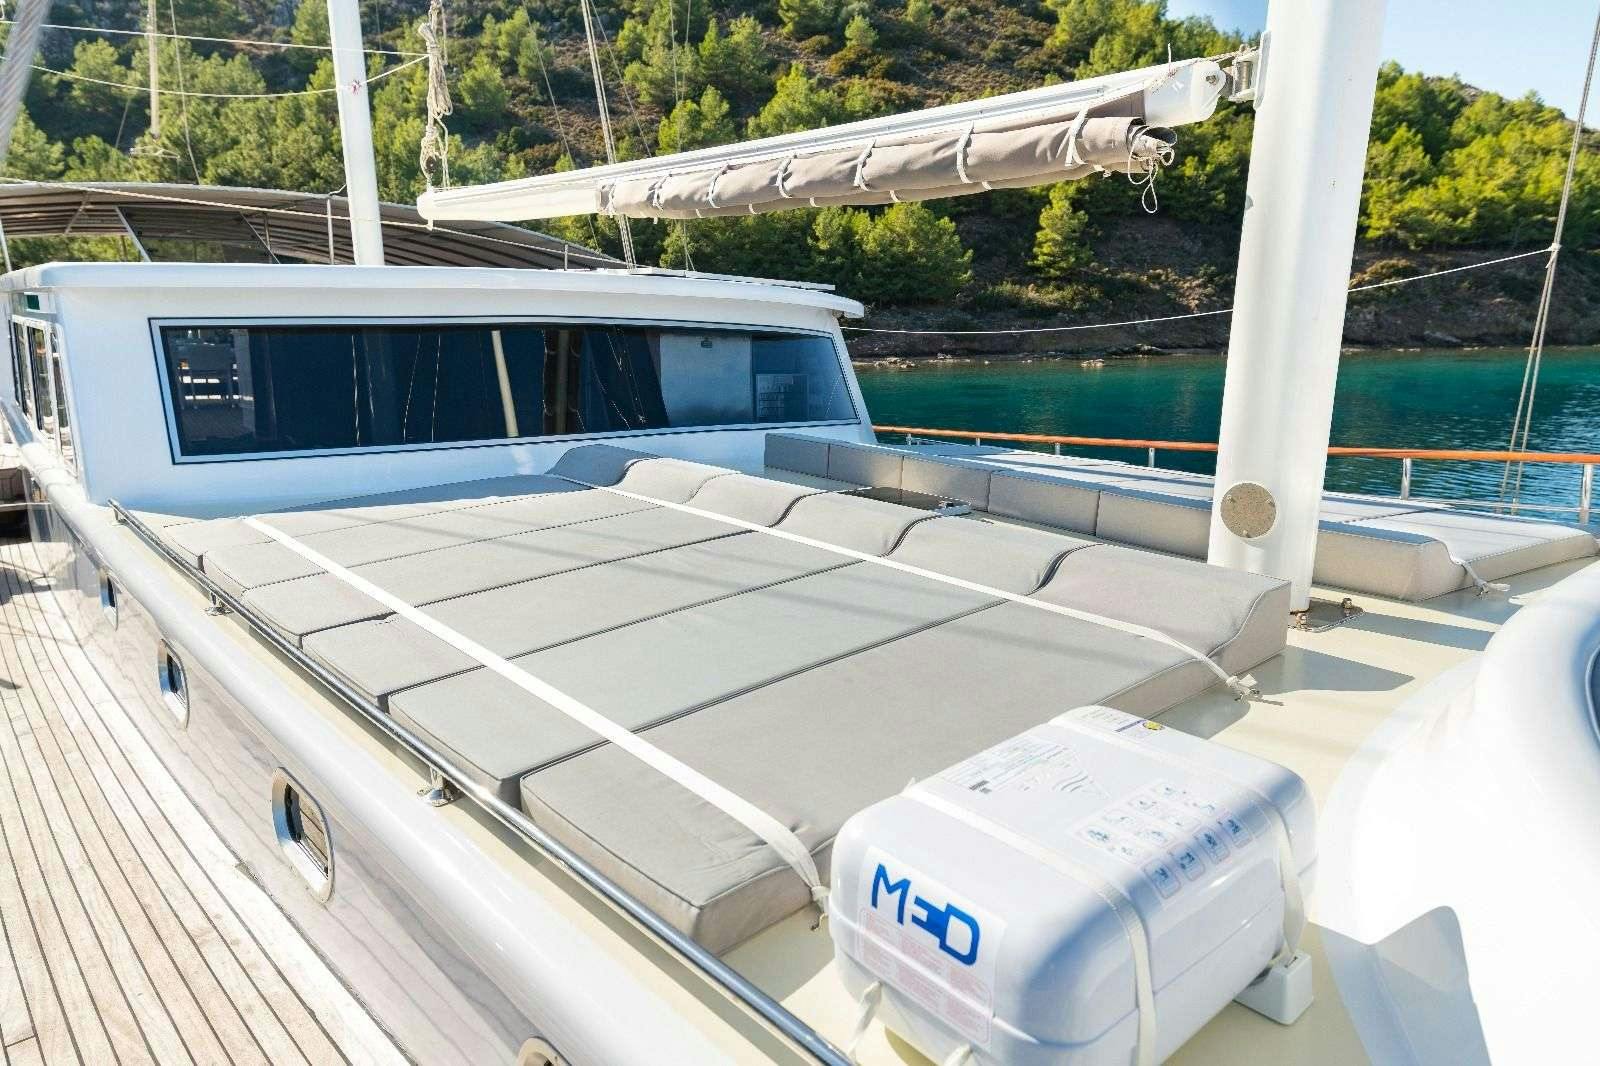 koray ege - Luxury yacht charter Turkey & Boat hire in Greece & Turkey 3